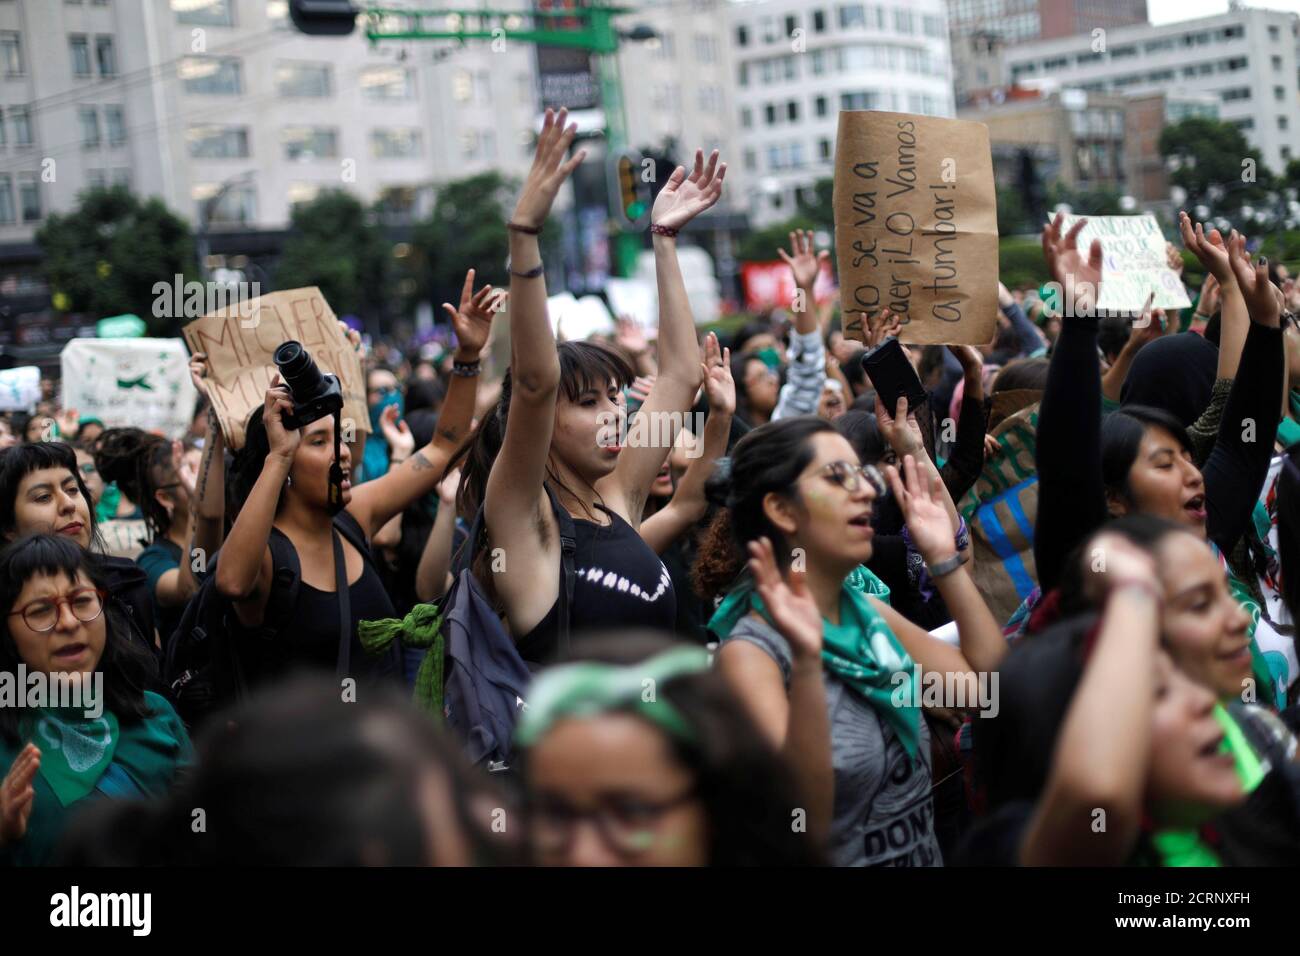 Activistas por los derechos del aborto participan en una manifestación en apoyo del aborto legal y seguro en la Ciudad de México, México, 28 de septiembre de 2018. REUTERS/Edgard Garrido Foto de stock